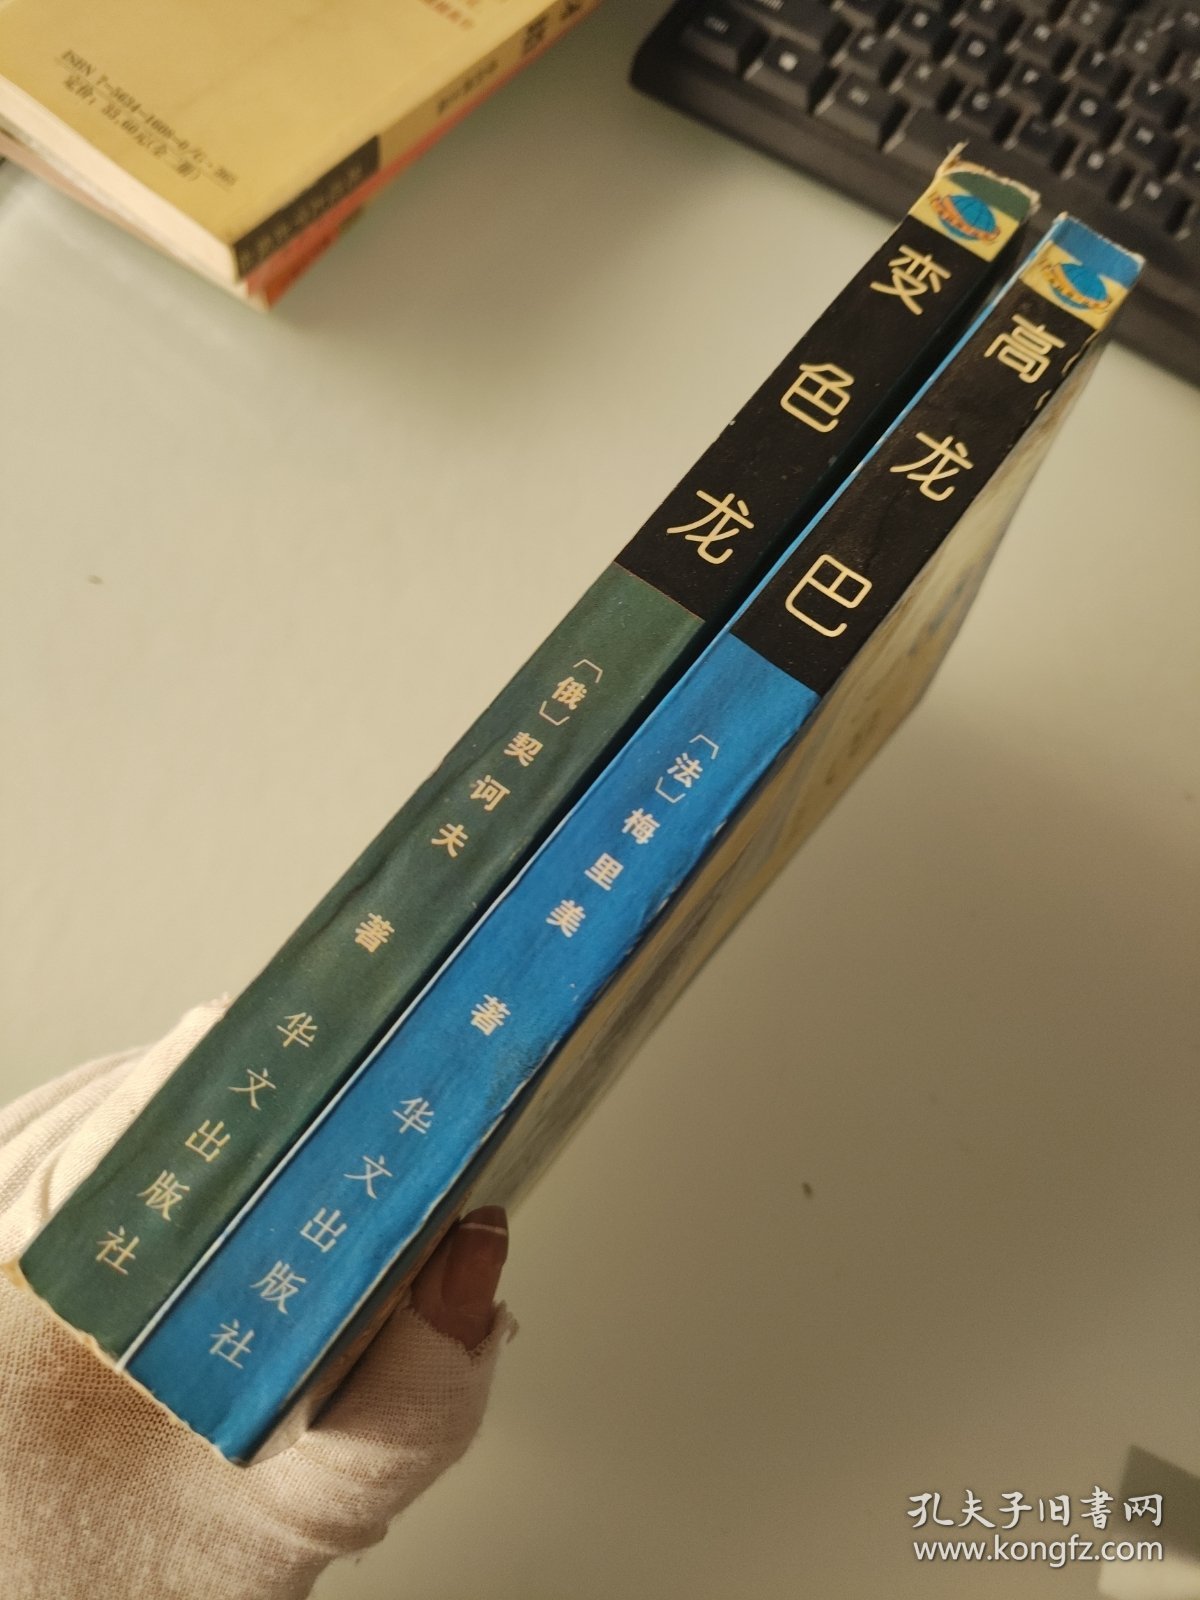 变色龙，高龙巴:梅里美中短篇小说精选2本合售